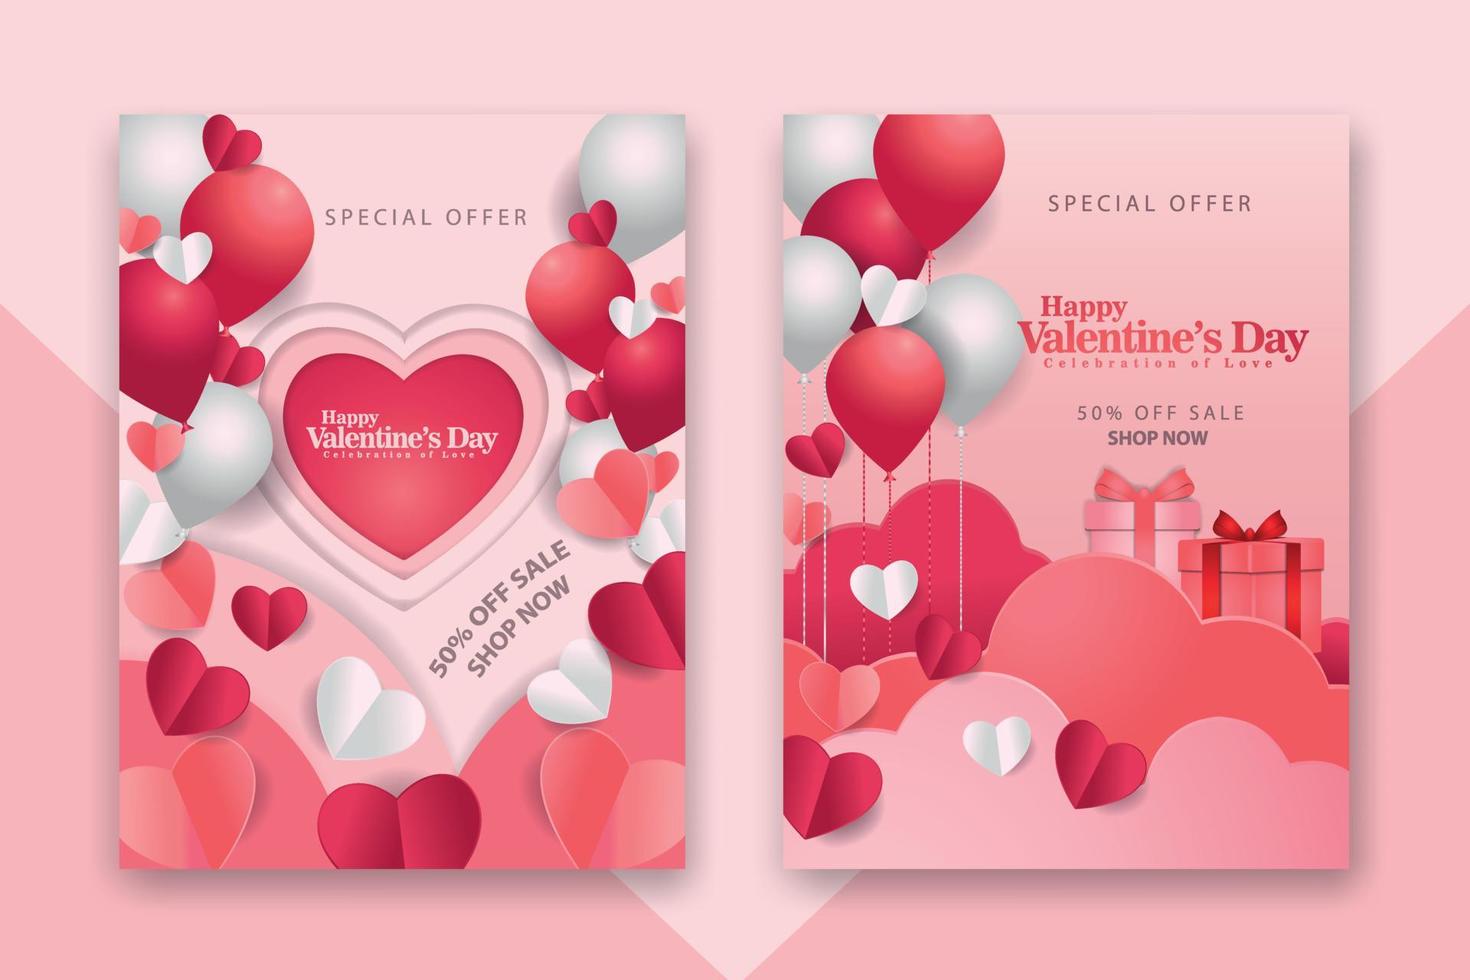 affiches de concept de la saint-valentin sertie de coeurs en papier rouge 3d et rose et cadre sur fond géométrique. jolies bannières ou cartes de voeux de vente d'amour vecteur